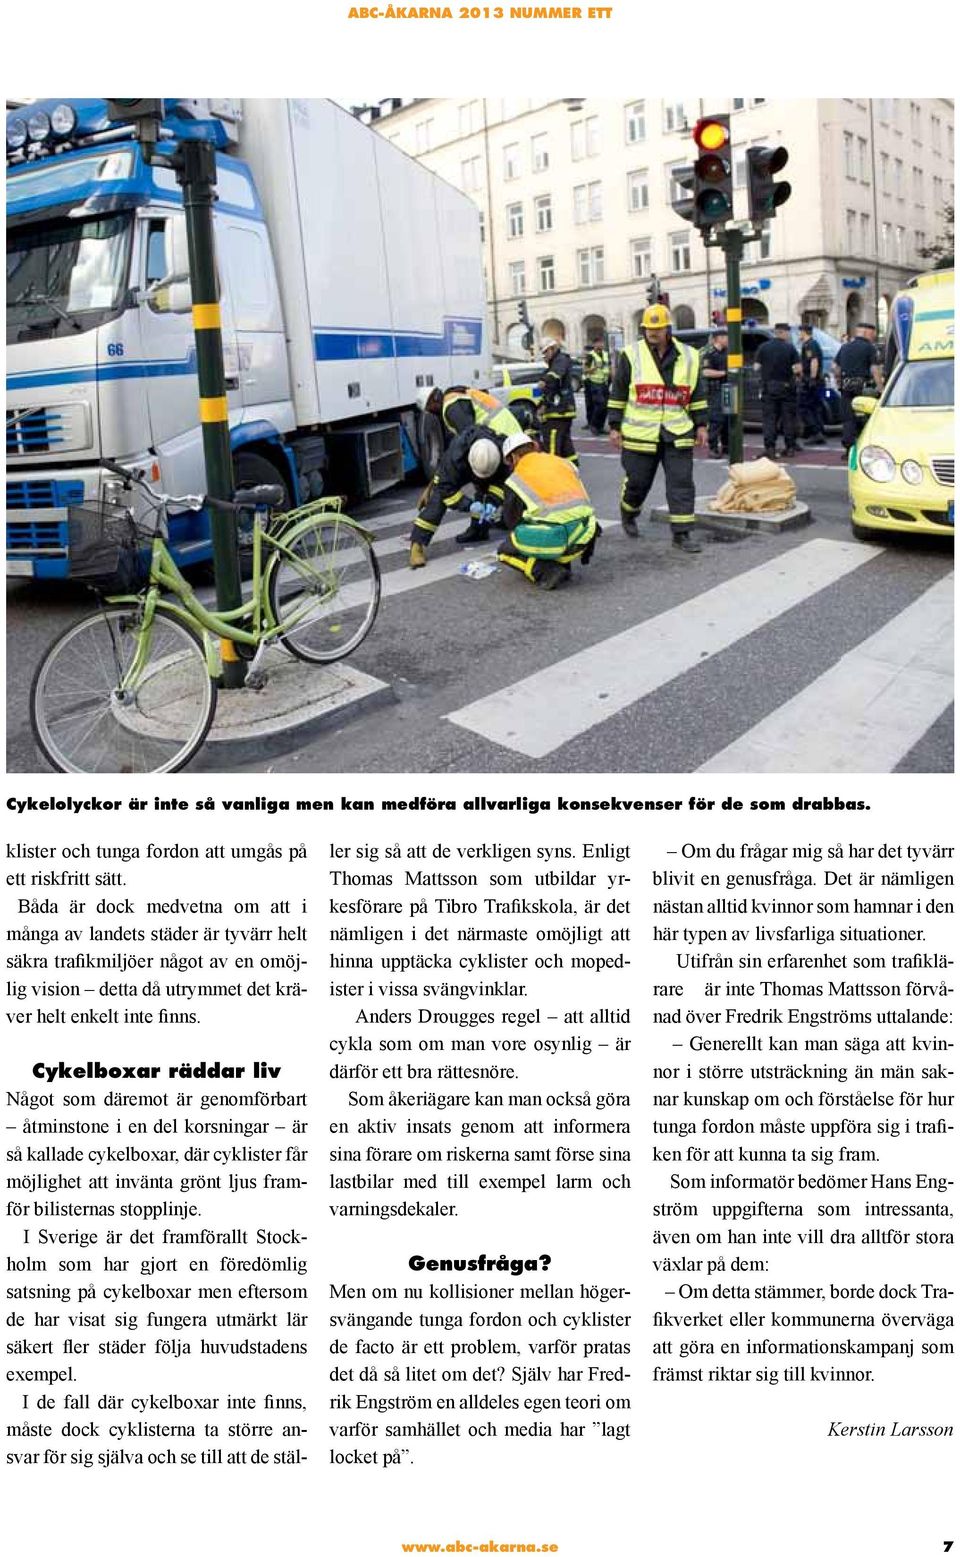 Cykelboxar räddar liv Något som däremot är genomförbart åtminstone i en del korsningar är så kallade cykelboxar, där cyklister får möjlighet att invänta grönt ljus framför bilisternas stopplinje.